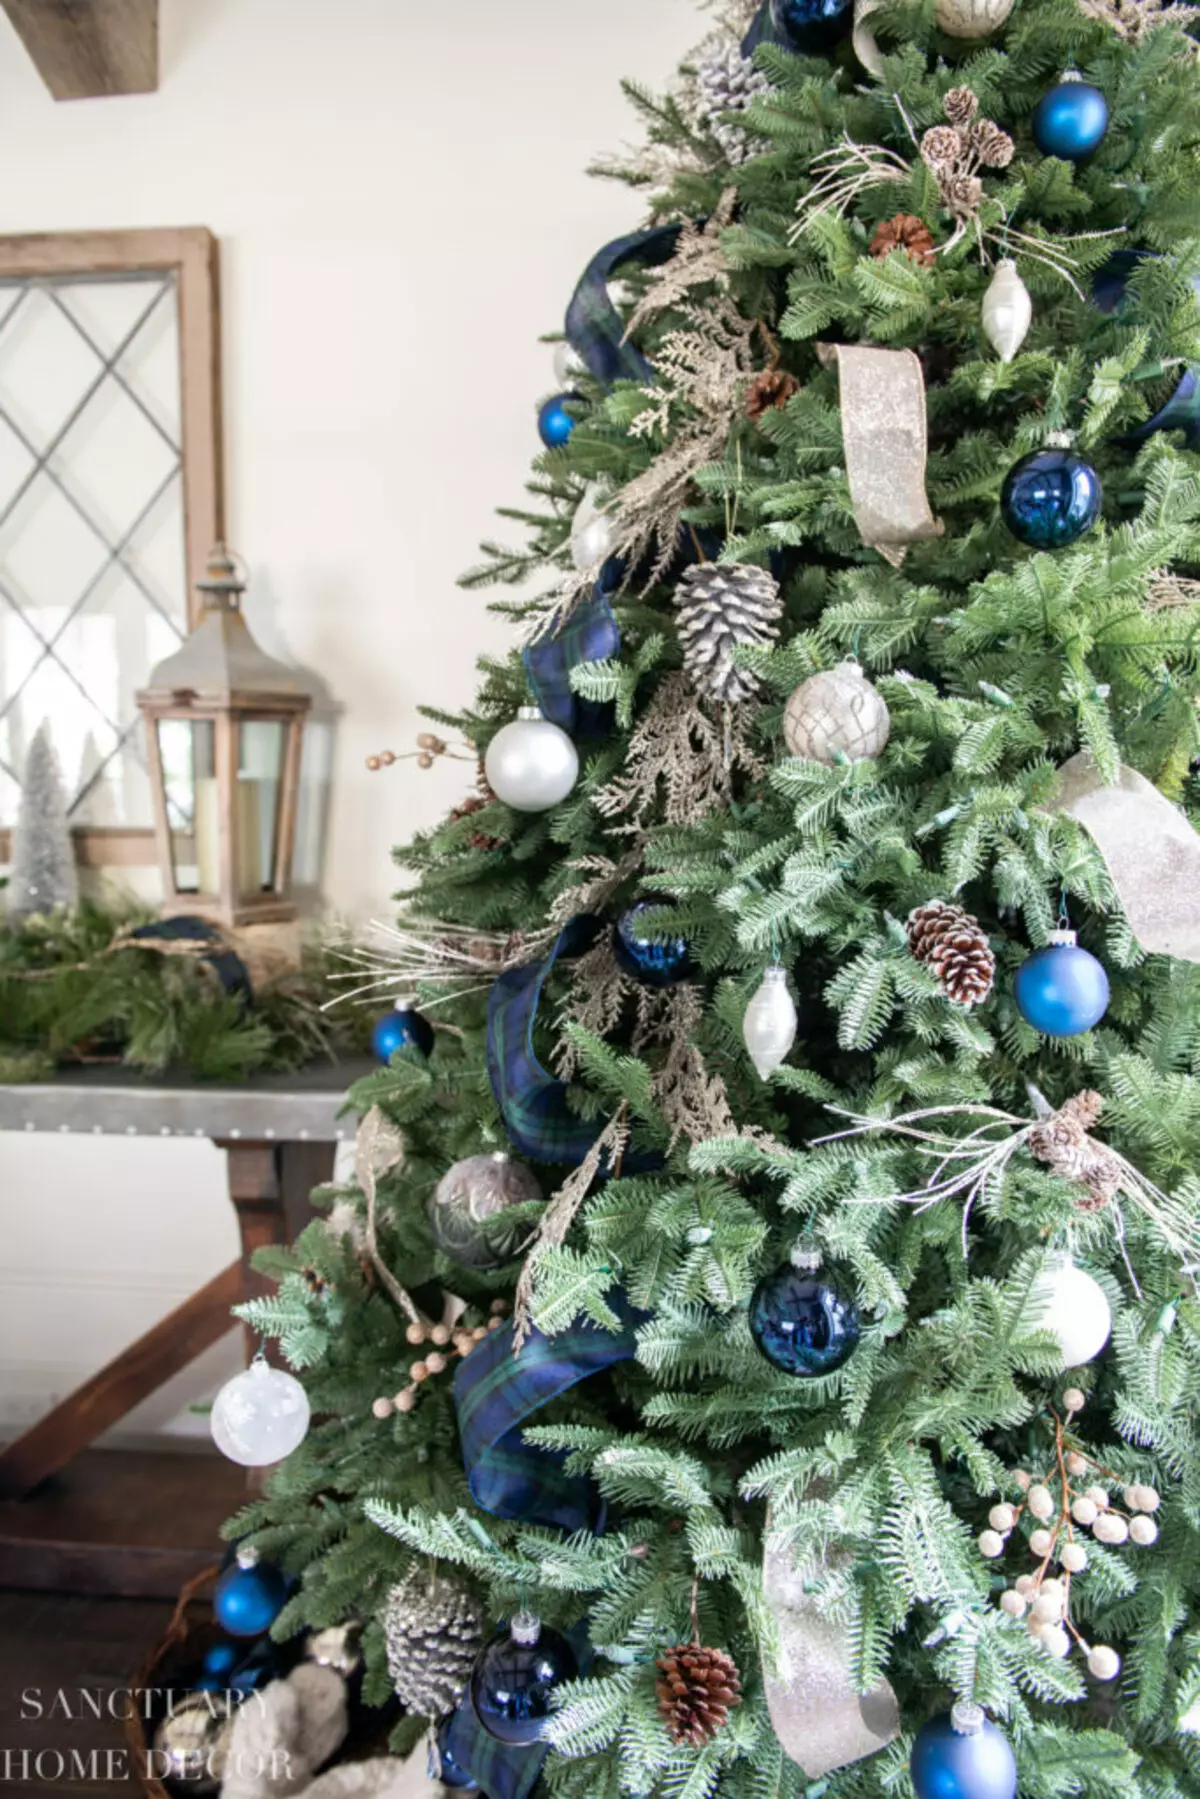 Làm thế nào để trang trí cây Giáng sinh màu xanh lam? 30 ảnh Làm thế nào để ăn mặc với những quả bóng và các trang trí khác trong tông màu xanh và bạc? 7627_11